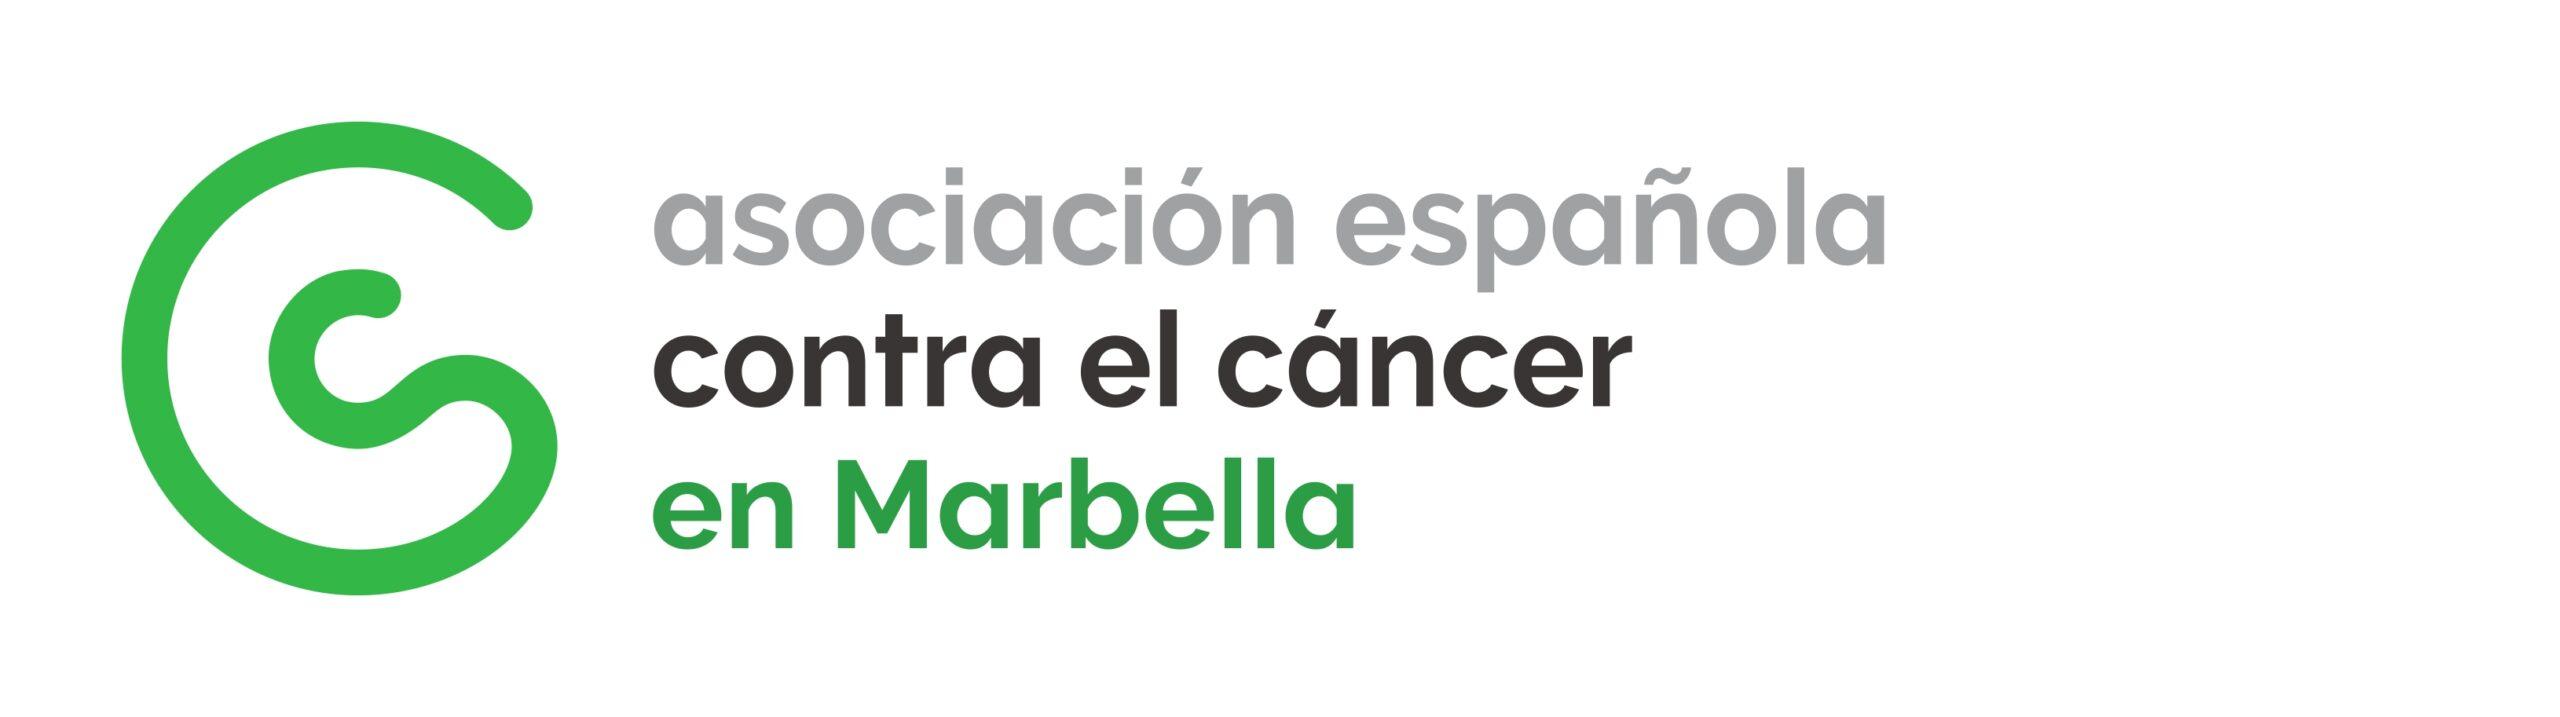 ASOCIACIÓN ESPAÑOLA CONTRA EL CANCER